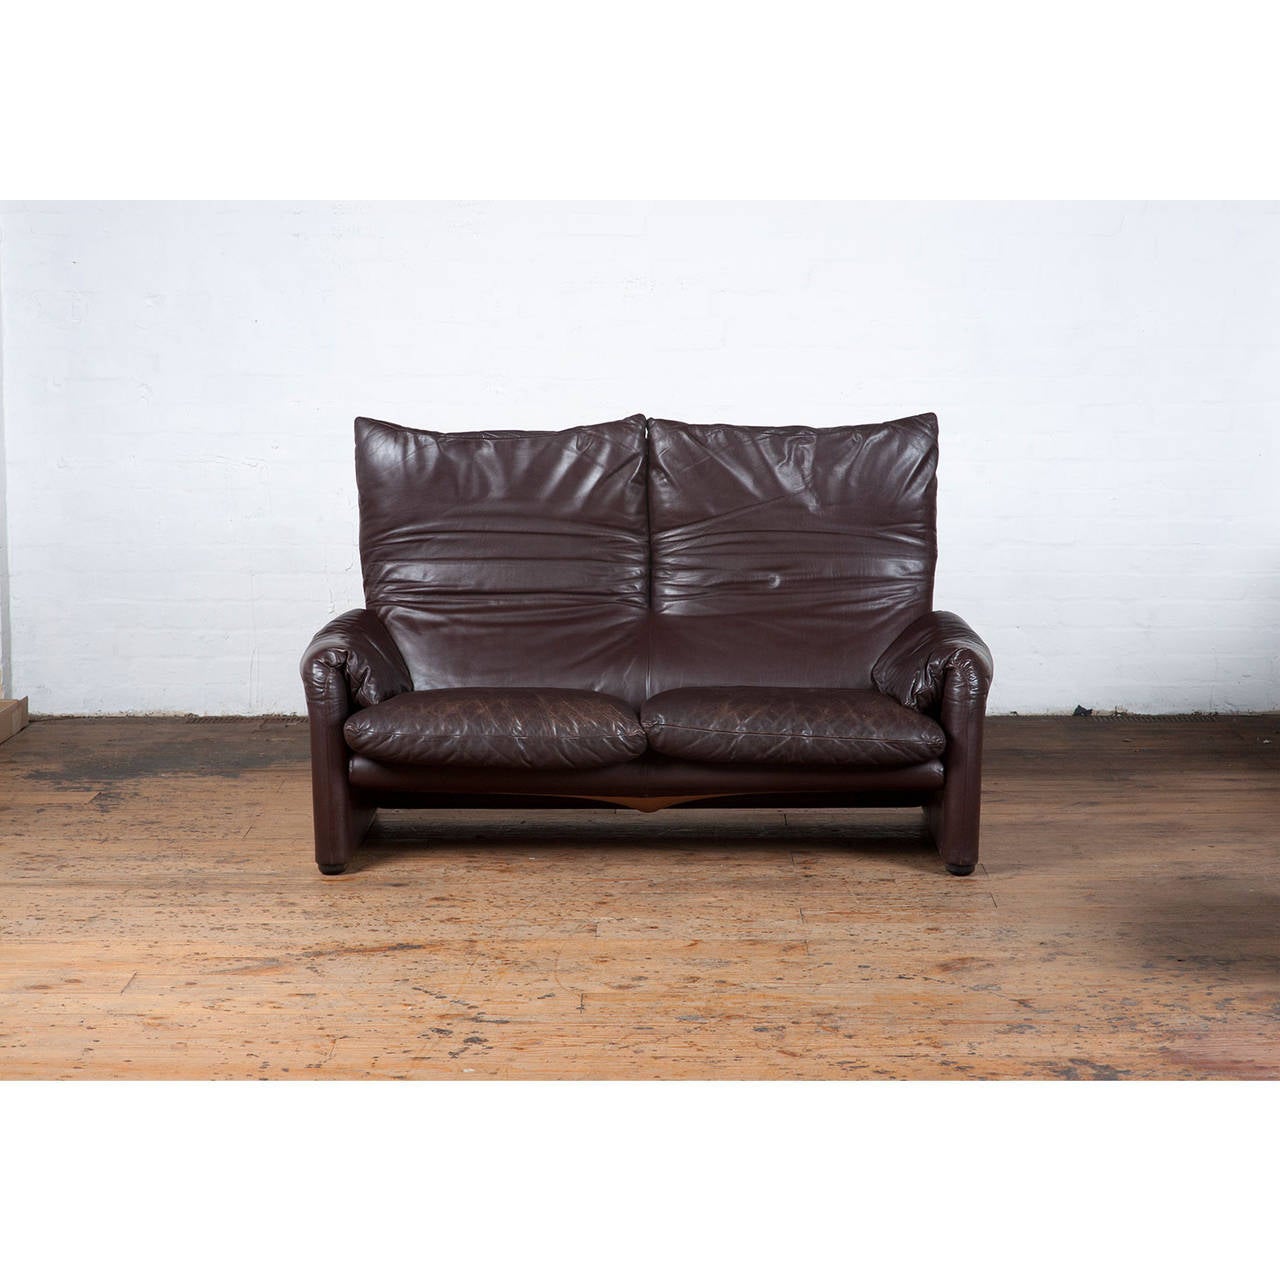 Italian 1970s 'Maralunga' Dark Brown Leather Sofa by Vico Magistretti for Cassina For Sale